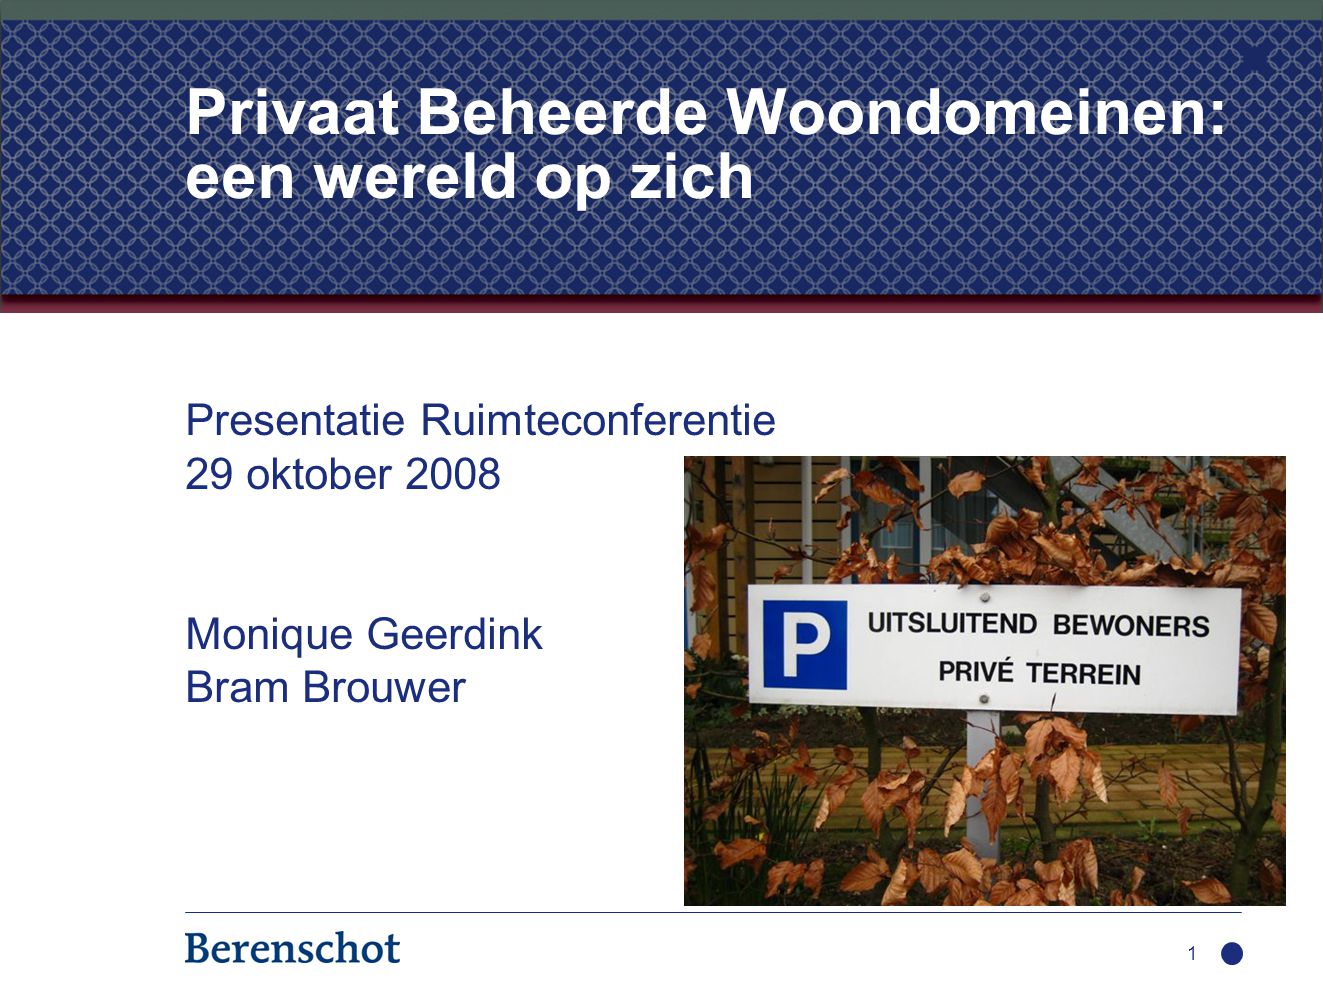 Presentatie Ruimteconferentie 29 oktober 2008 Monique Geerdink Bram Brouwer 1 Privaat Beheerde Woondomeinen: een wereld op zich